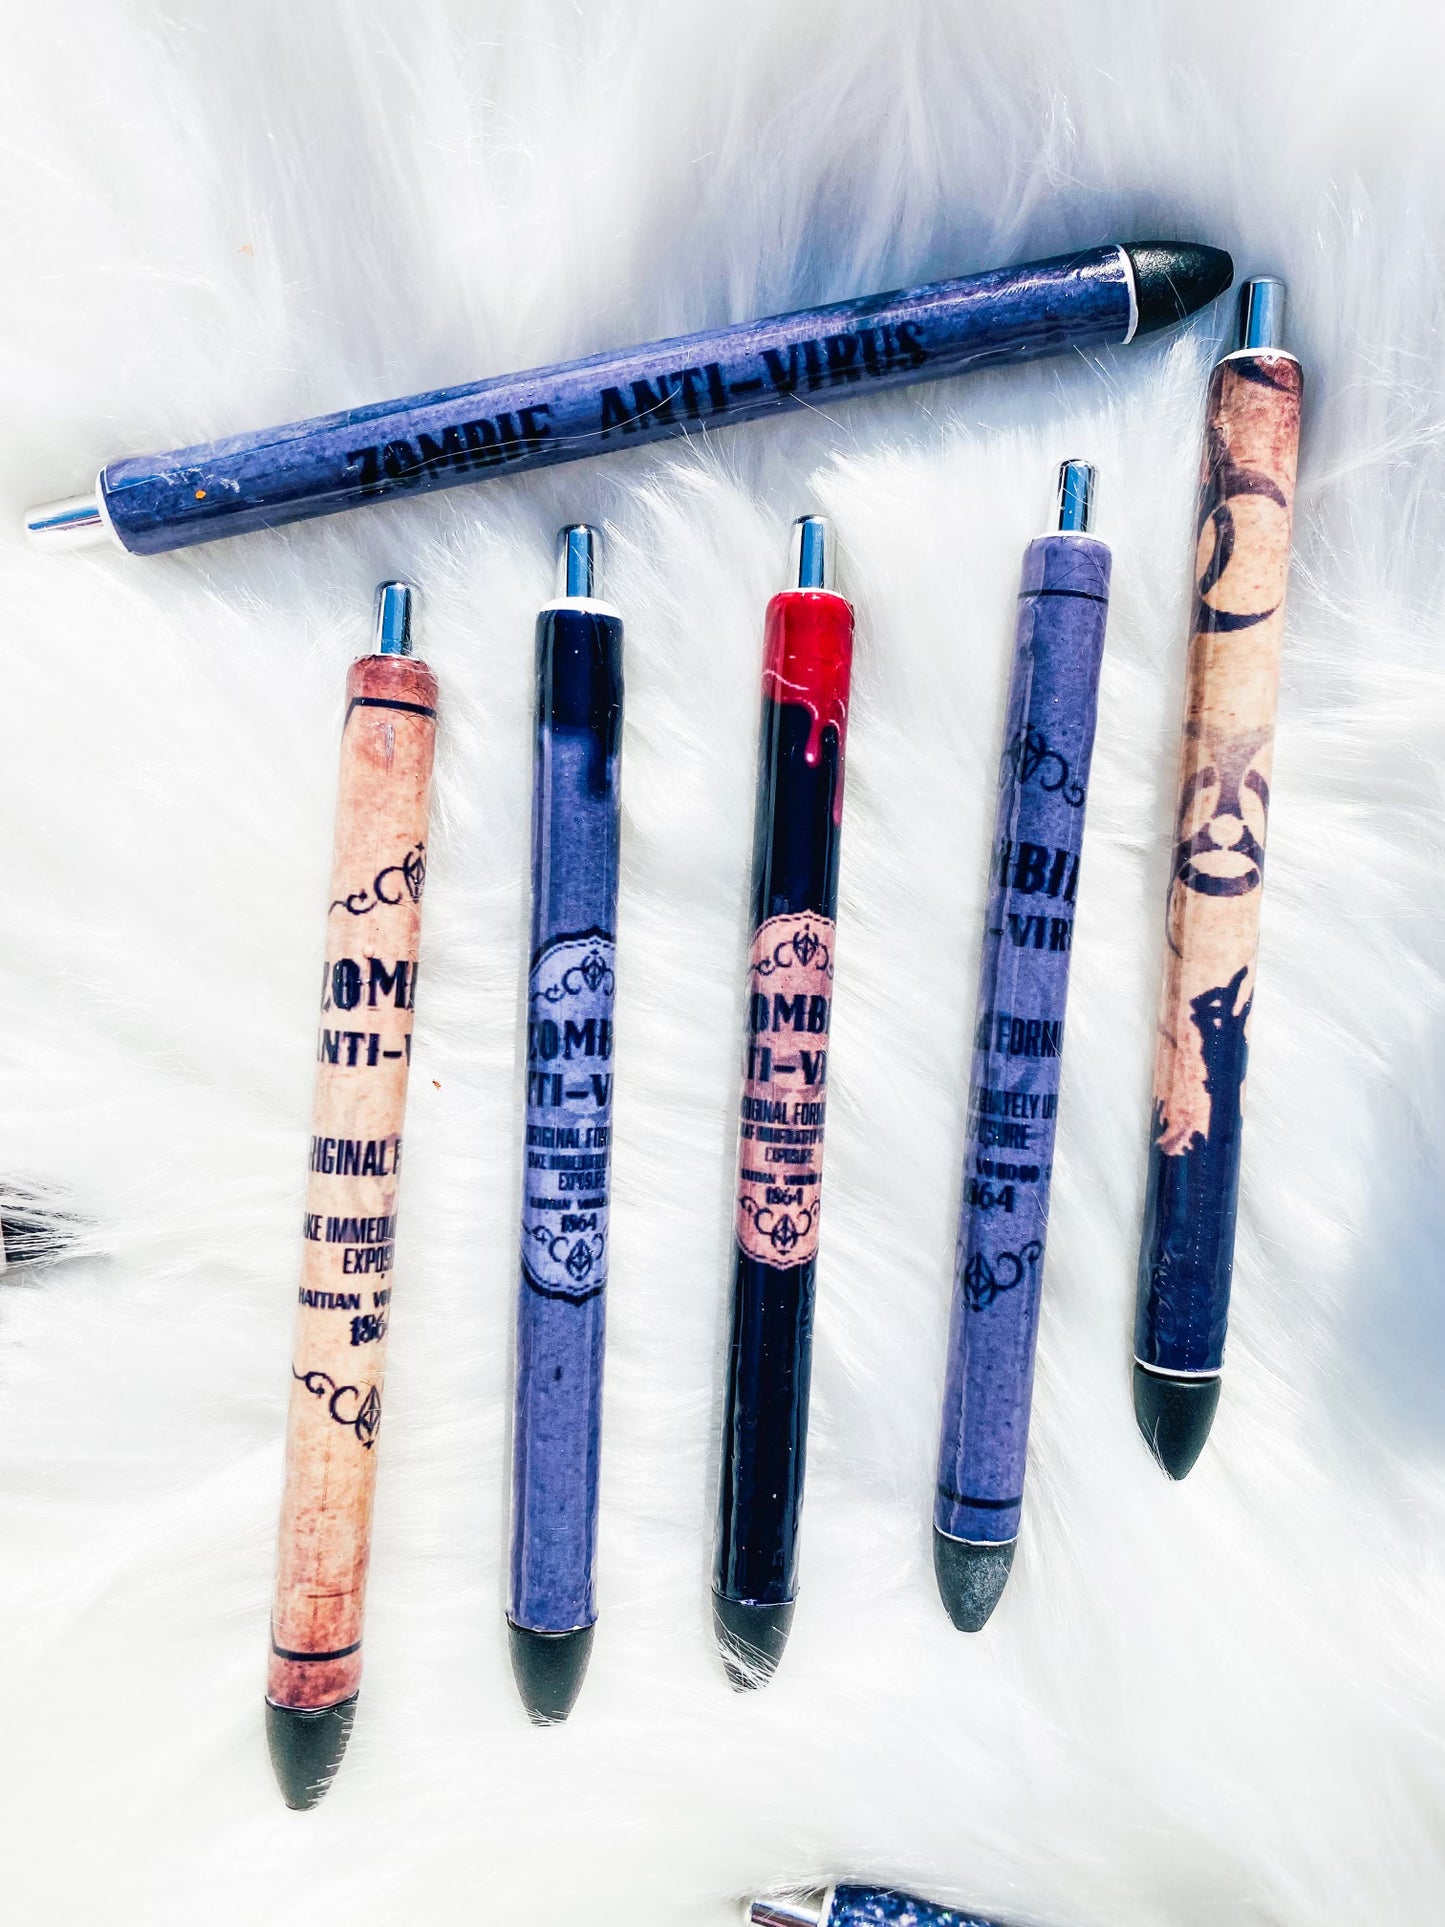 Zombie pens